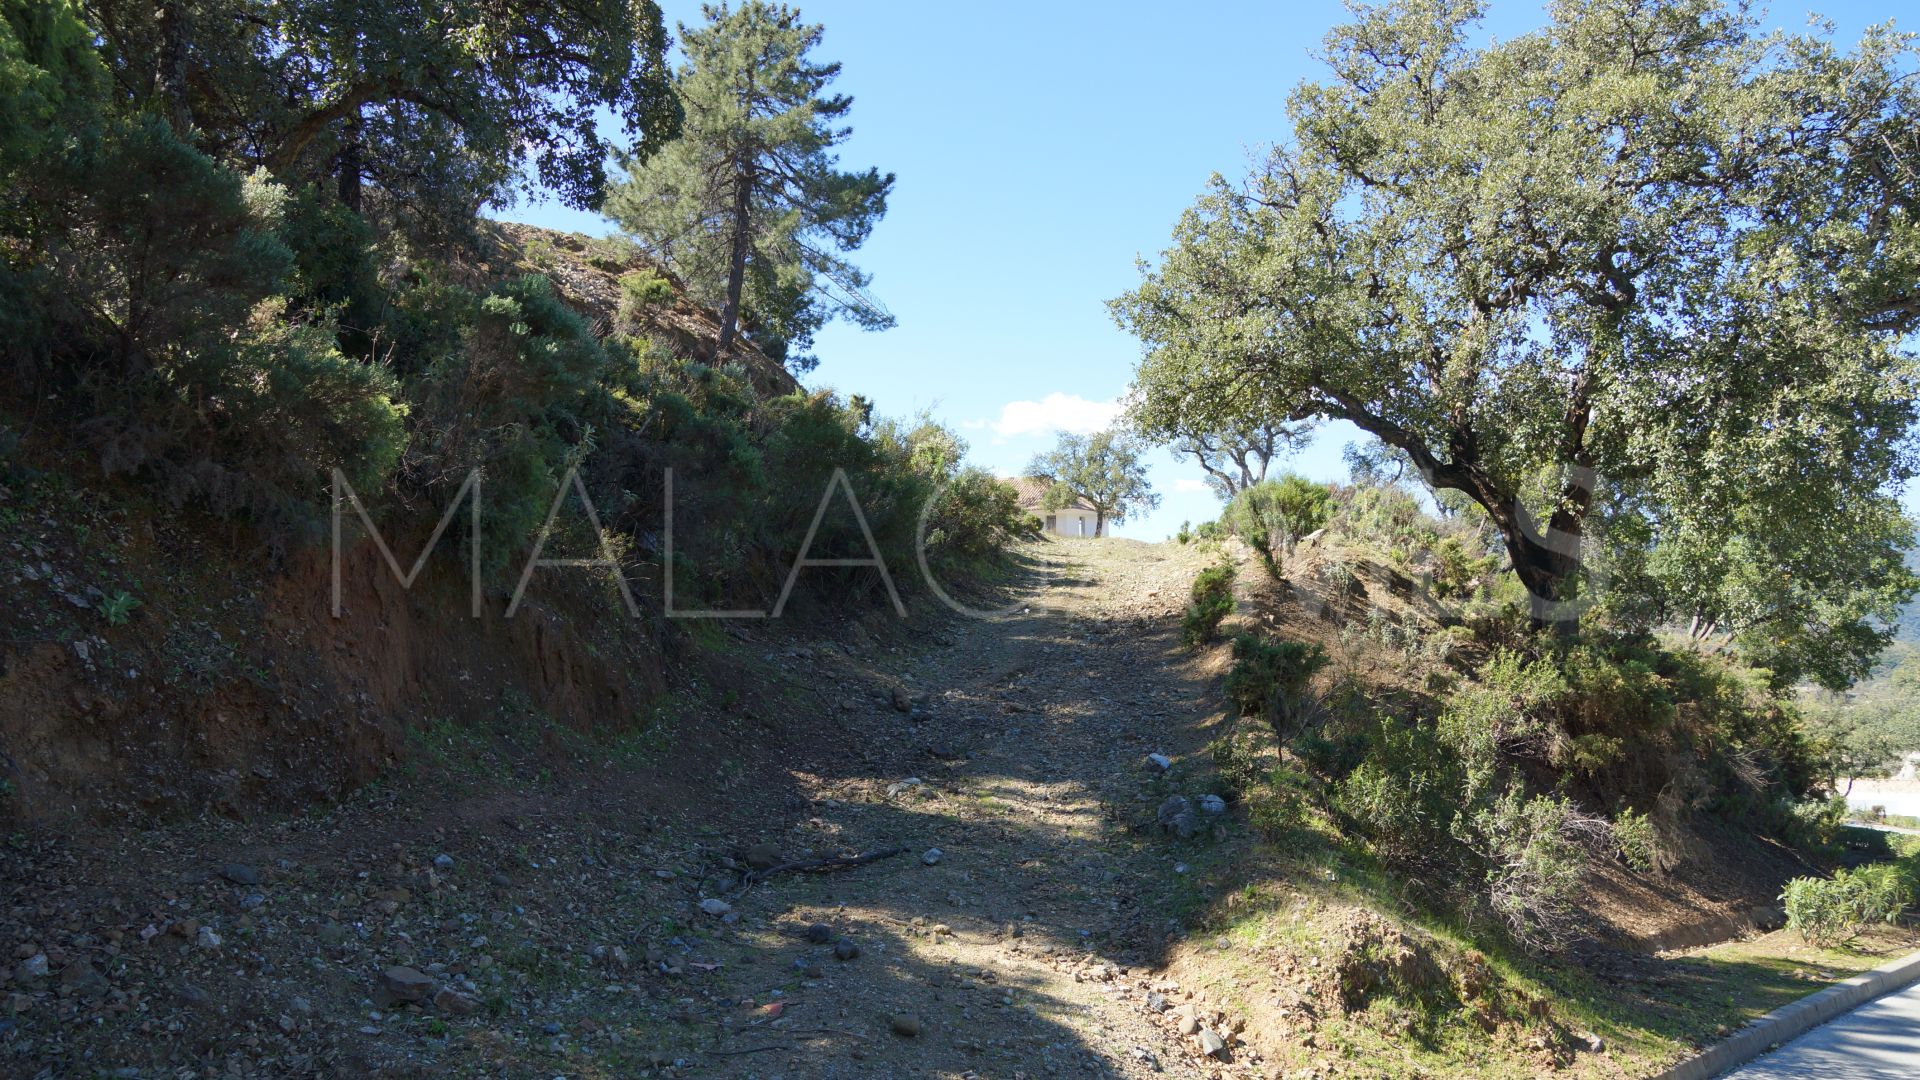 Terrain for sale in La Zagaleta